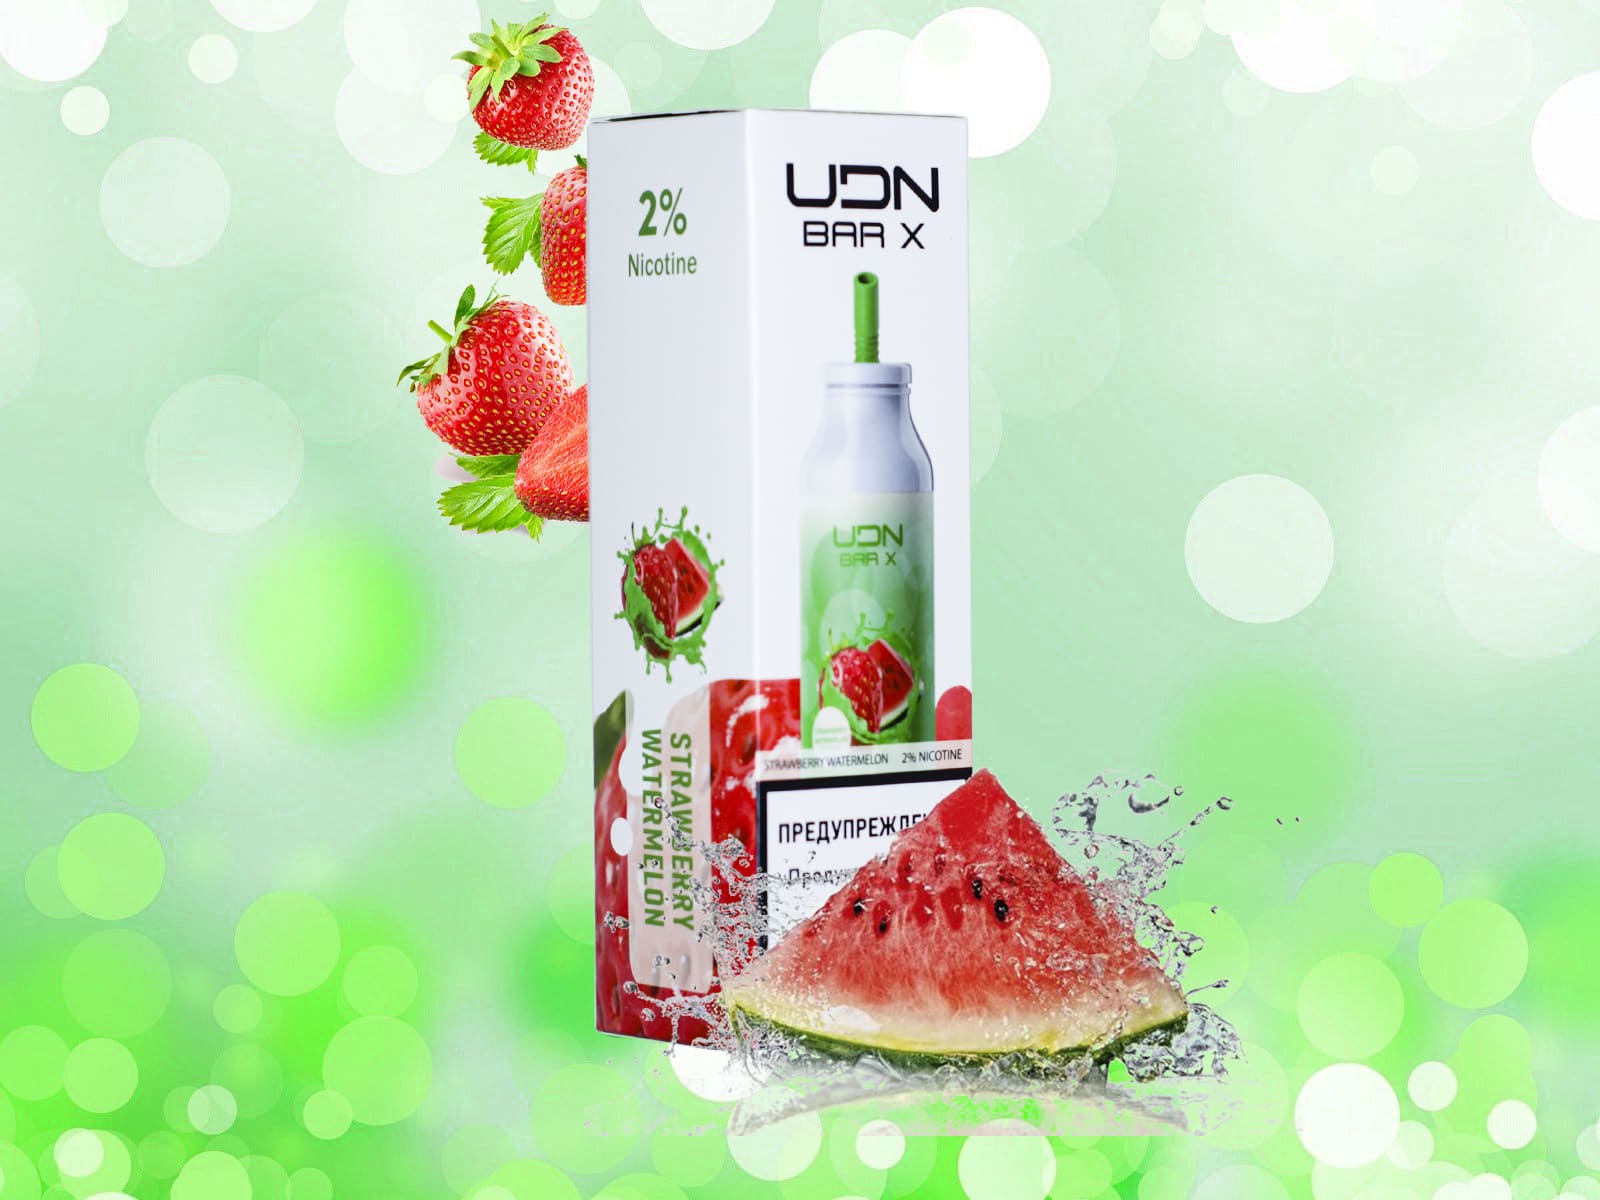 UDN BAR X 7000 / Strawberry watermelon